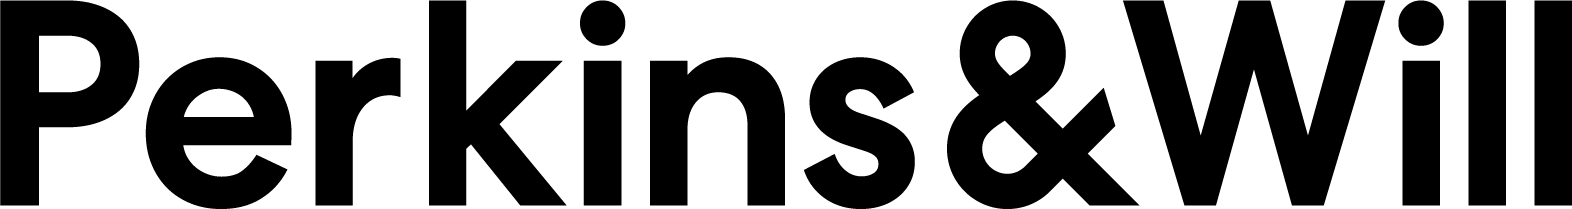 PW-logo-black.png